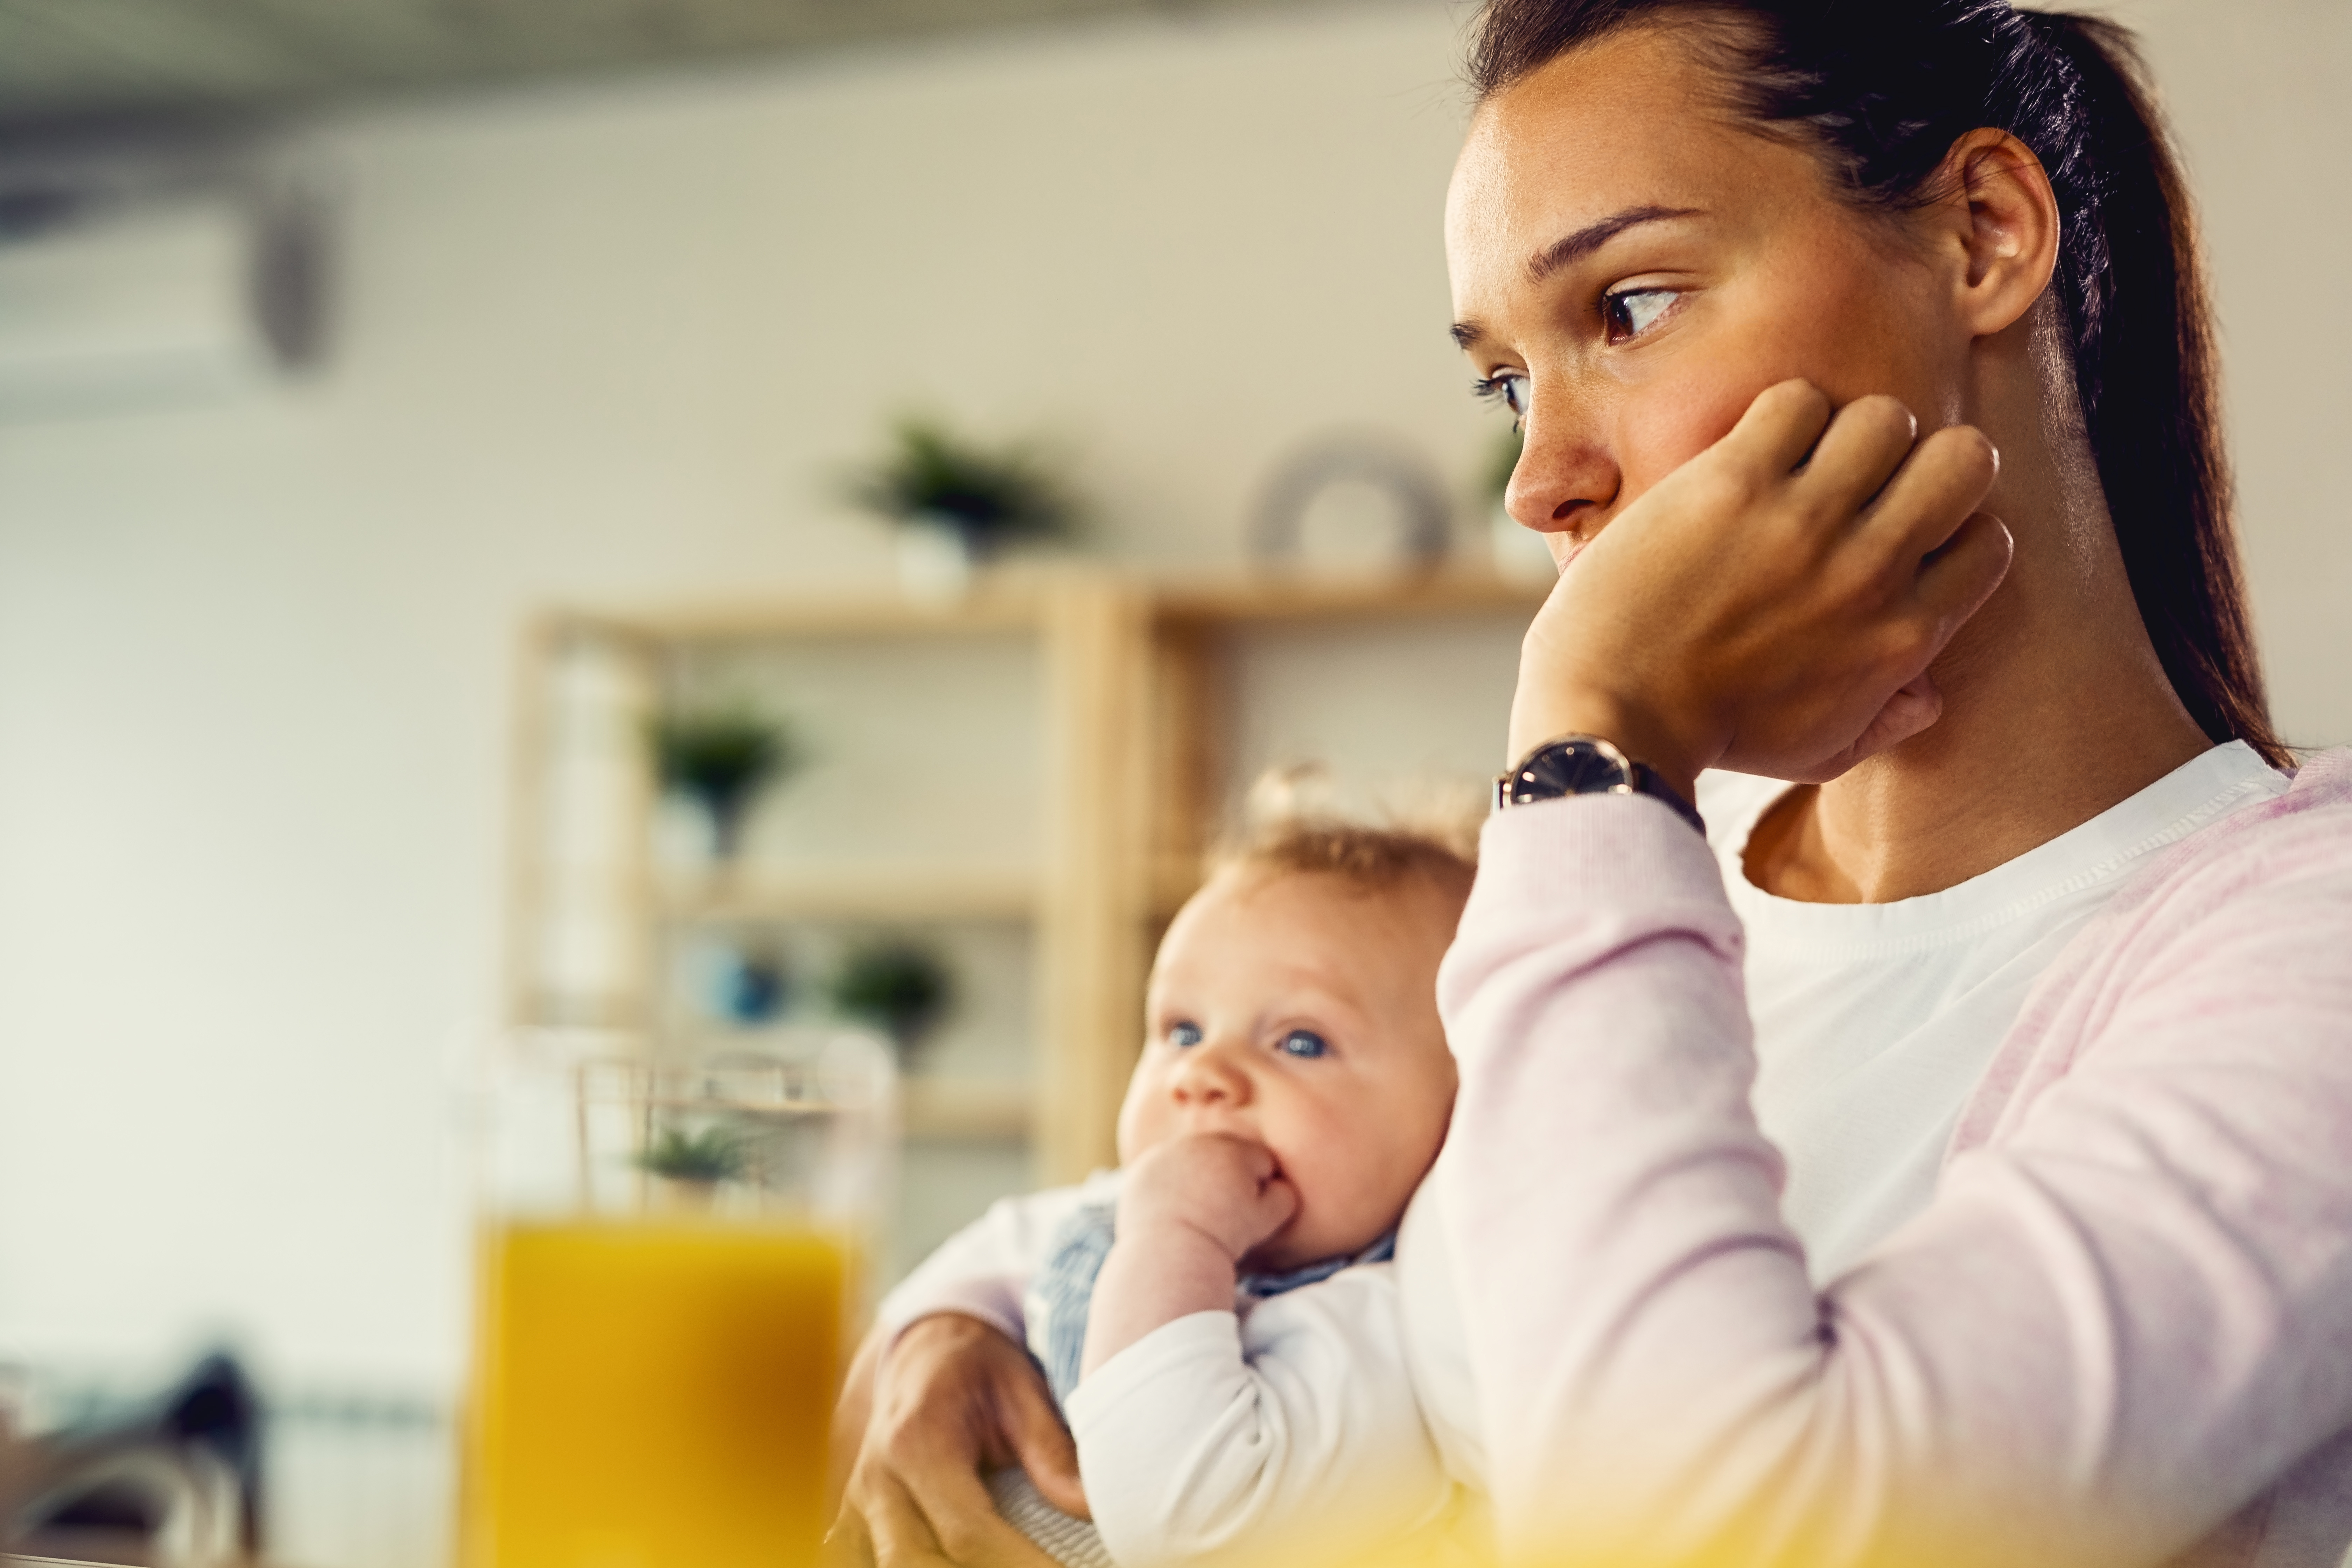 Baby Blues Versus Postpartum Depression